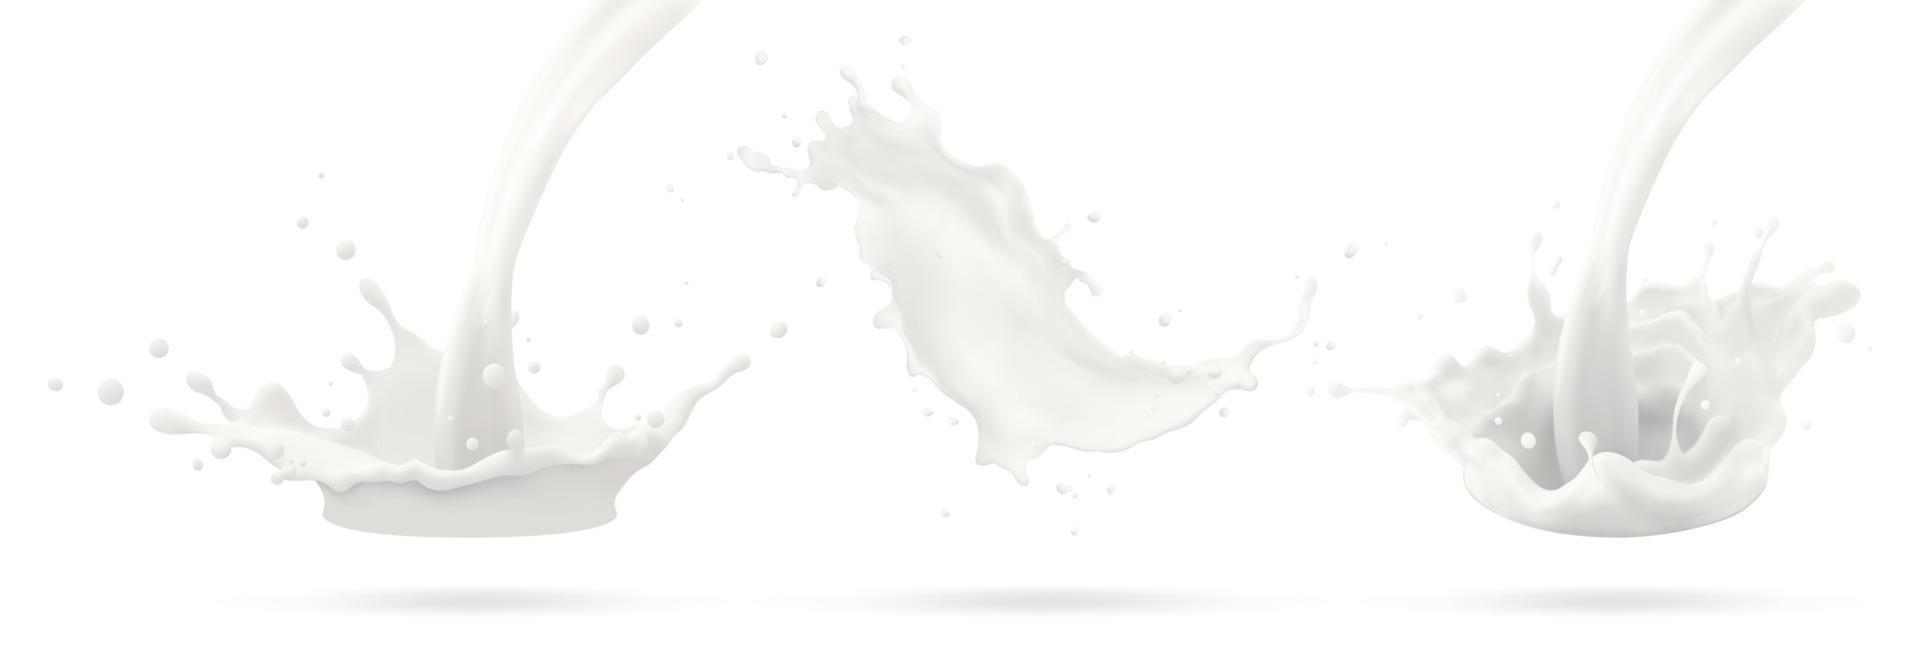 chorro de leche, salpicadura lechosa, salpicadura blanca líquida vectorial realista sobre fondo aislado. ilustración 3d vector